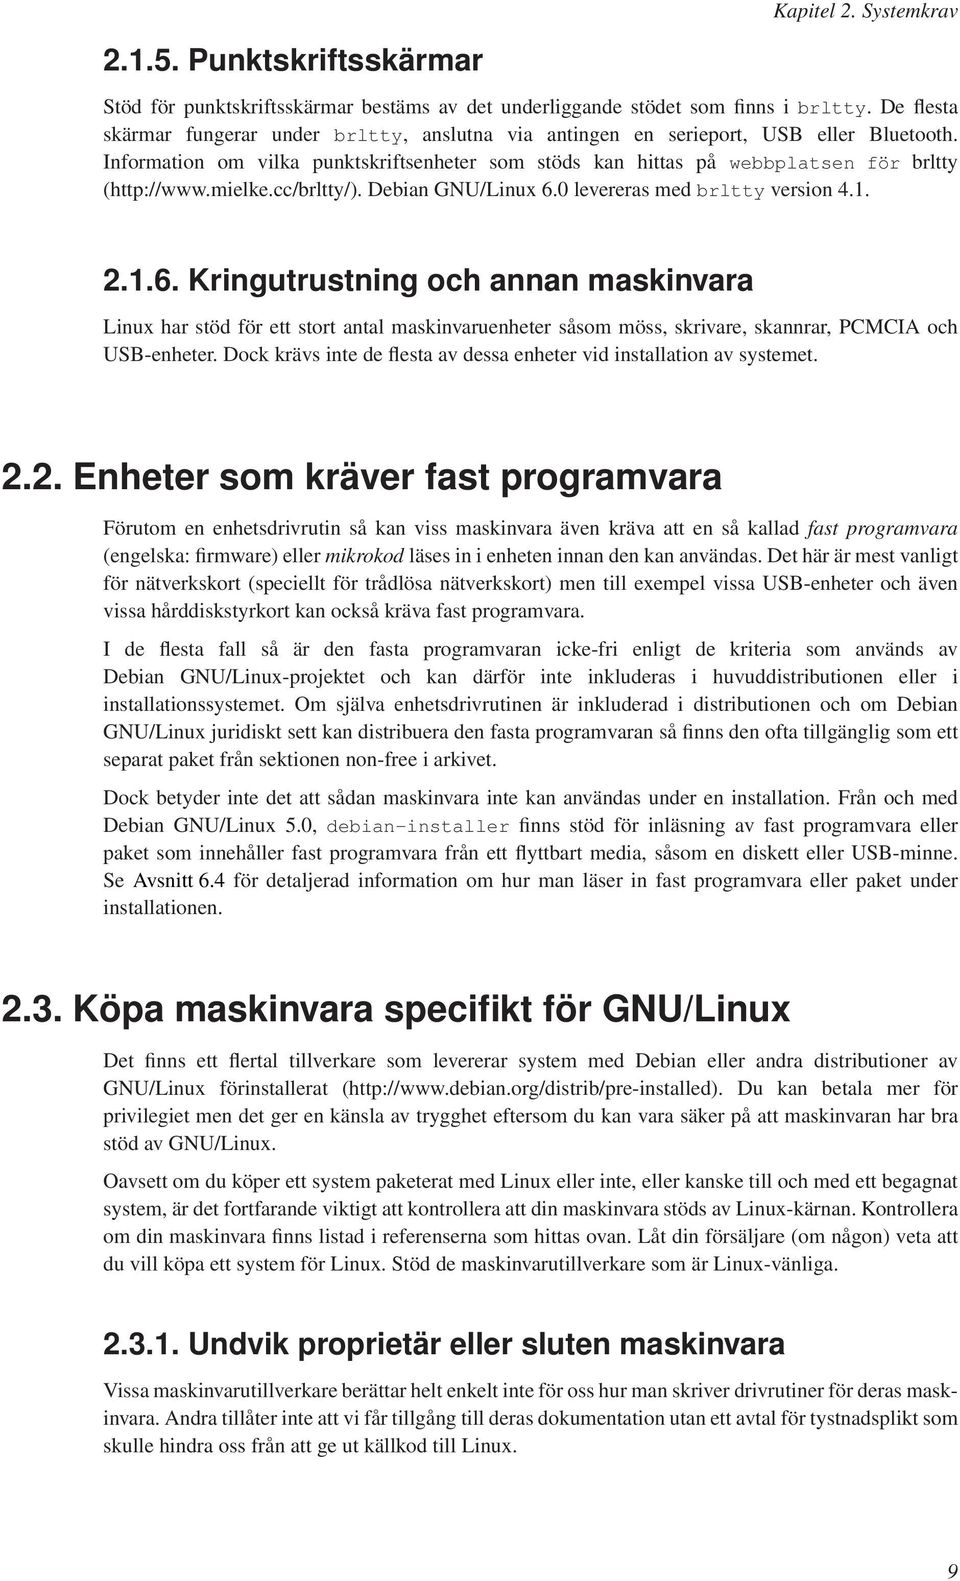 mielke.cc/brltty/). Debian GNU/Linux 6.0 levereras med brltty version 4.1. 2.1.6. Kringutrustning och annan maskinvara Linux har stöd för ett stort antal maskinvaruenheter såsom möss, skrivare, skannrar, PCMCIA och USB-enheter.